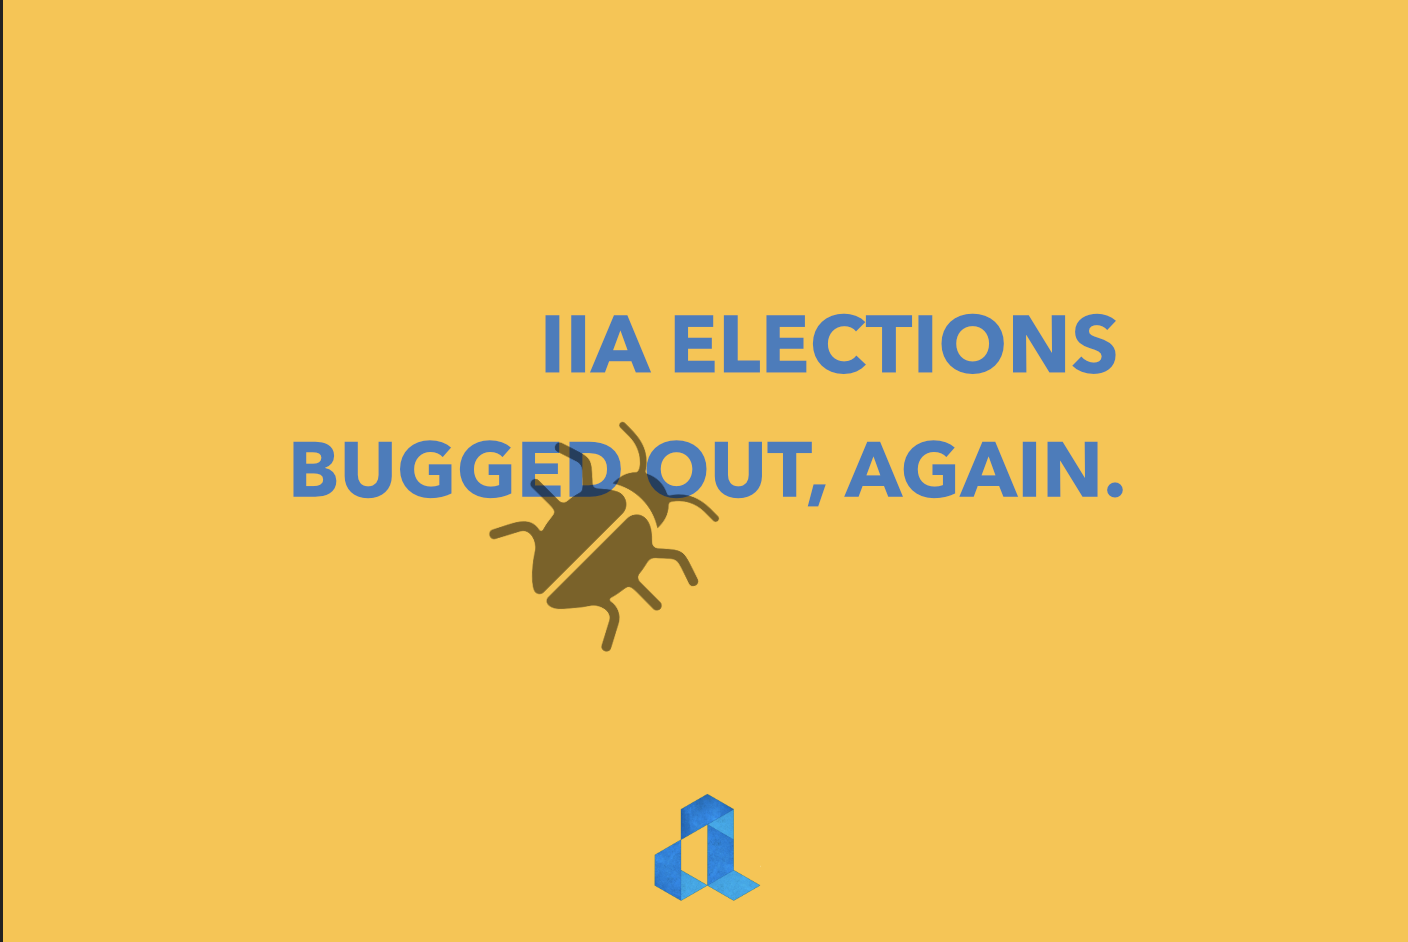 IIA Elections e-voting bug